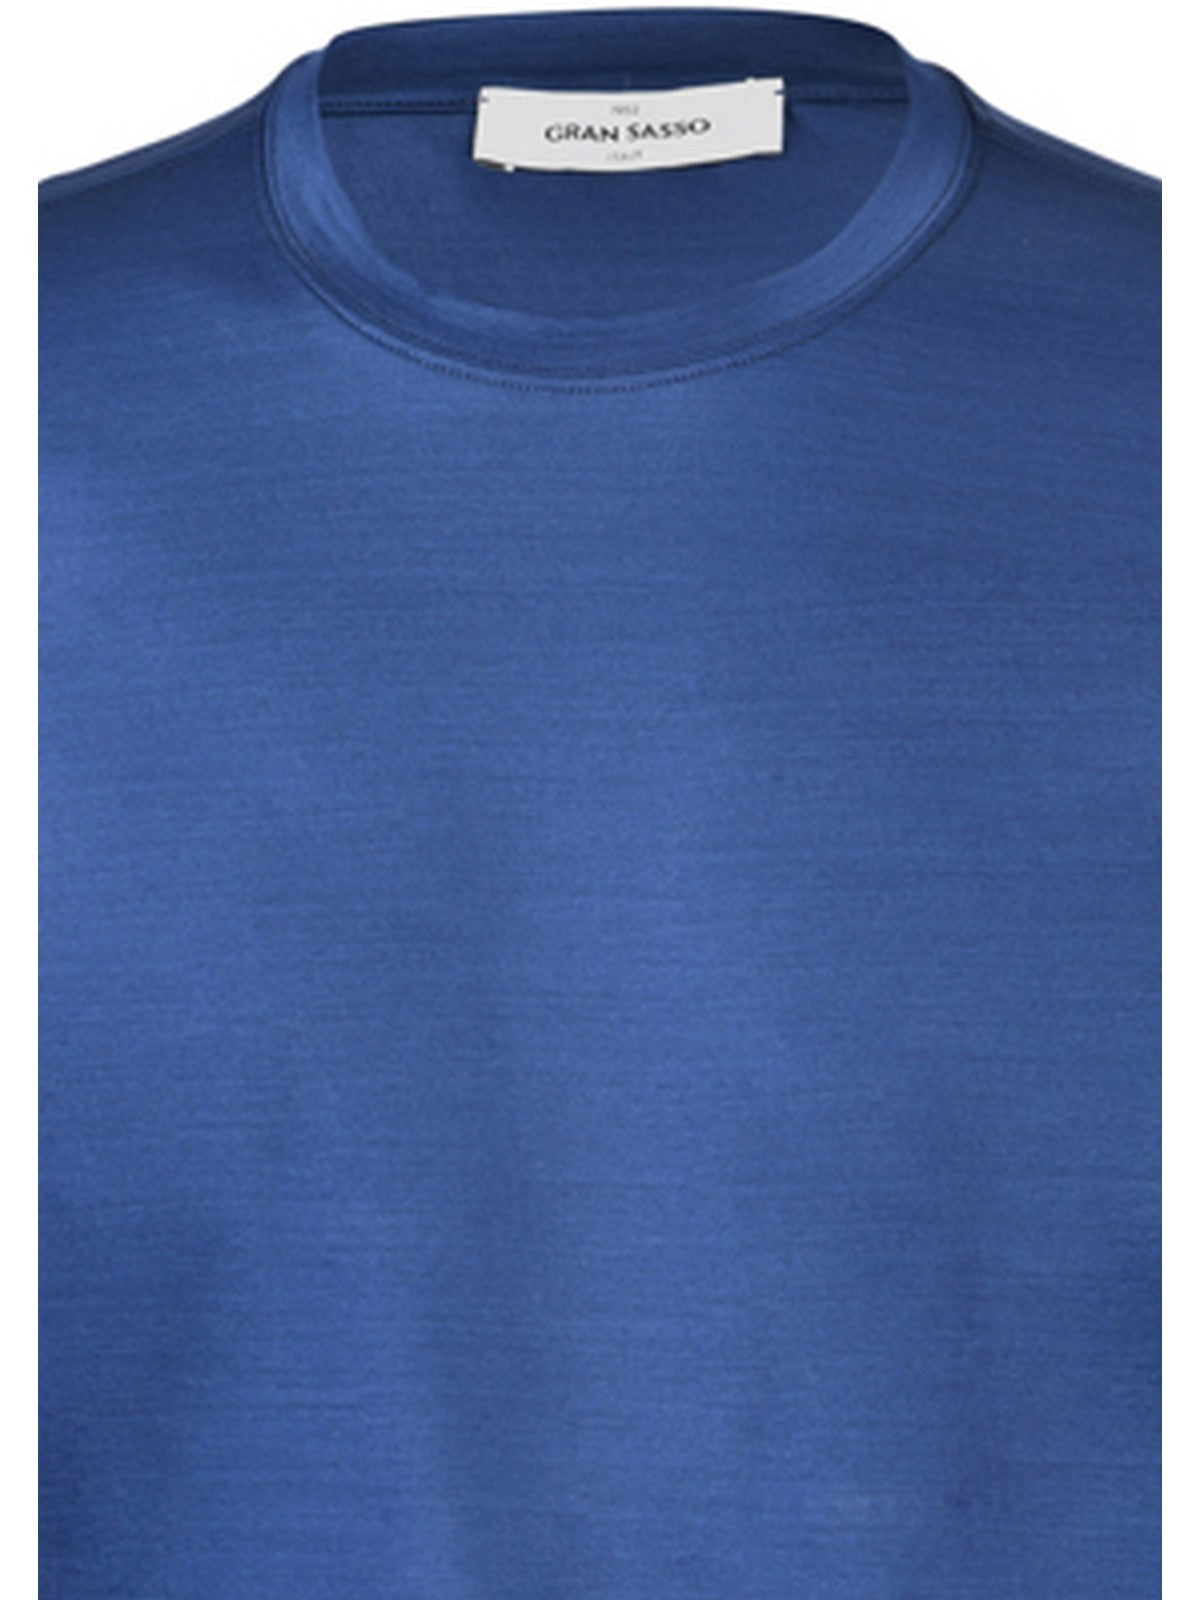 GRAN SASSO T-Shirt e Polo Uomo  60133/74002 596 Blu